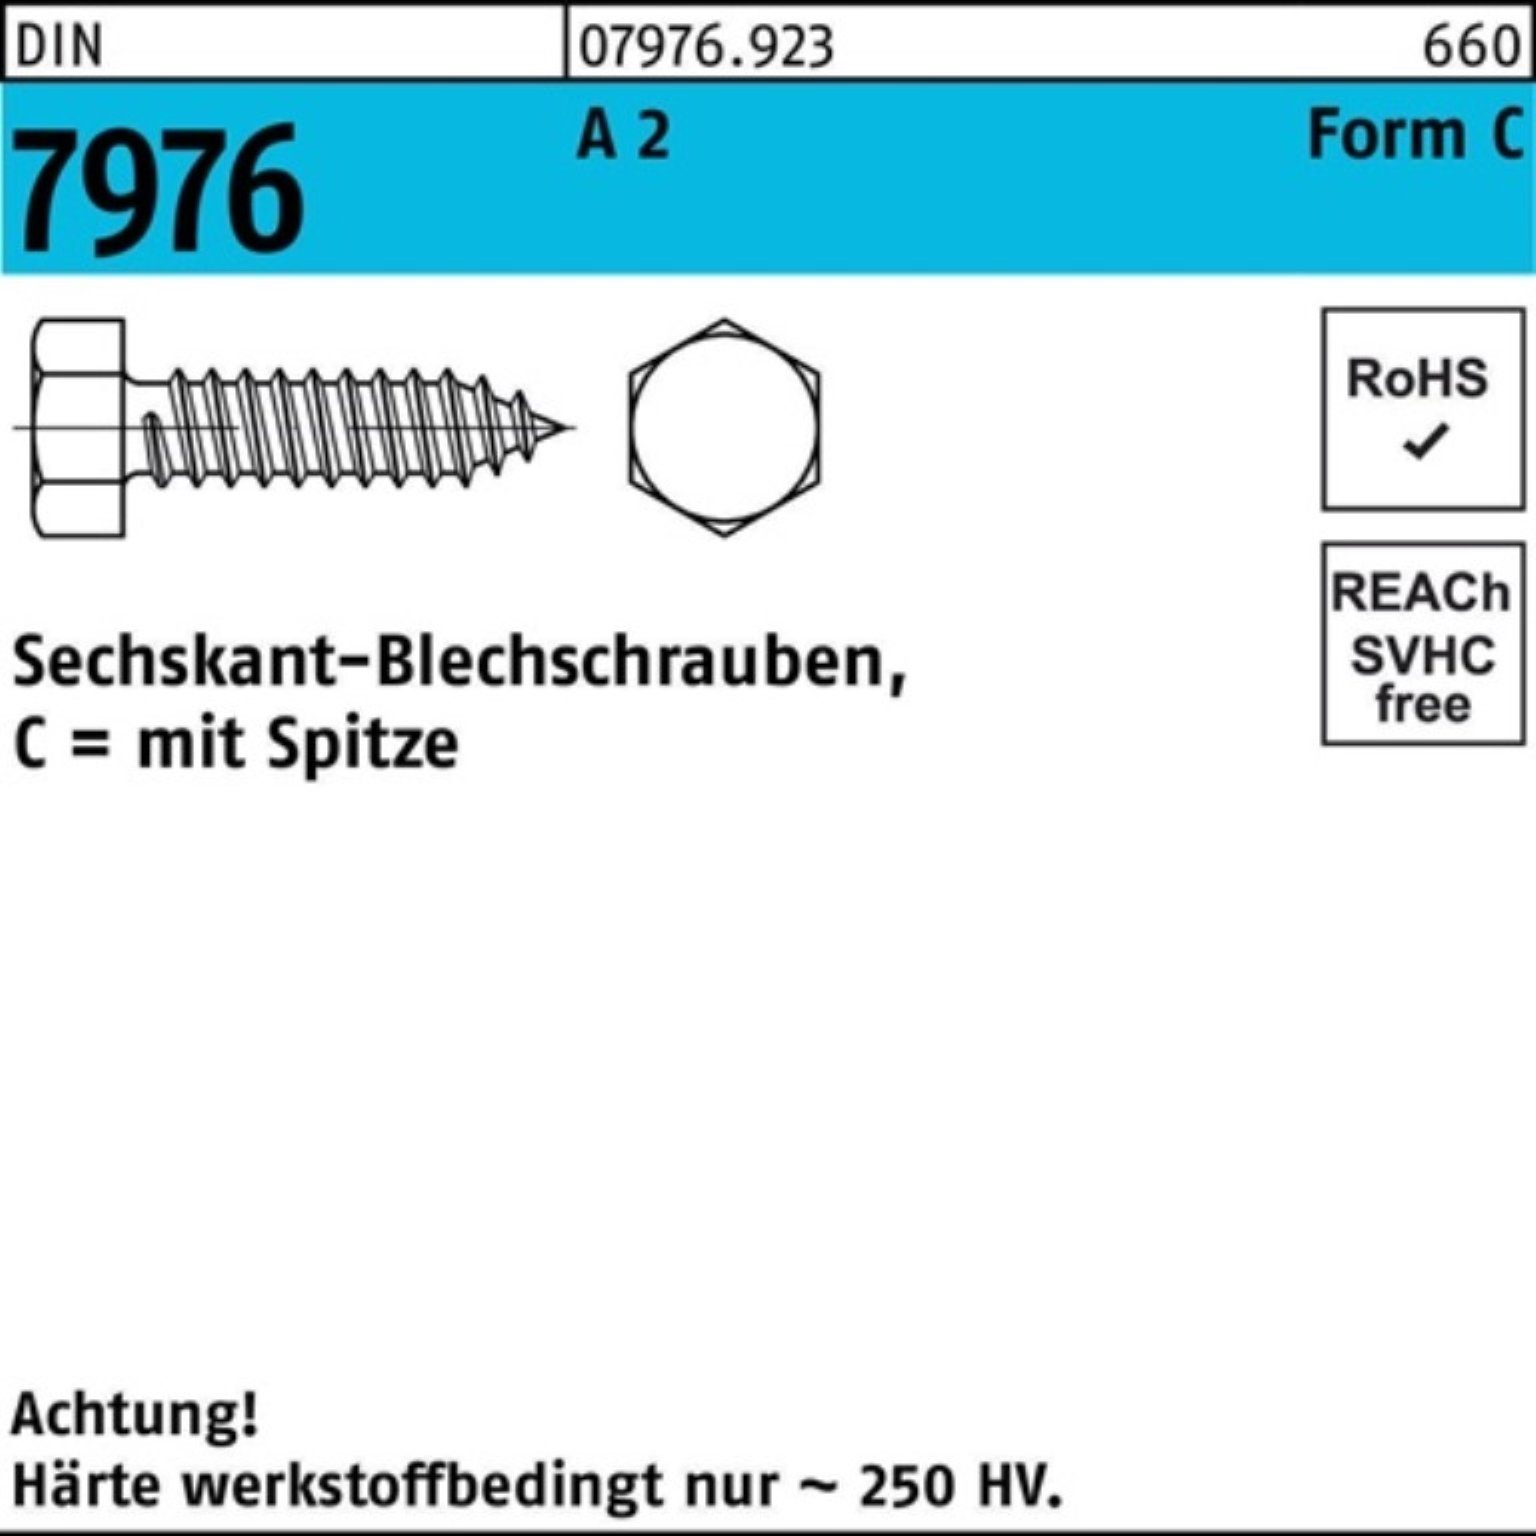 7976 DIN Blechschraube Reyher 2 Sechskant/Spitze C 1000 Pack 2,9x 1000er 16 Blechschraube A